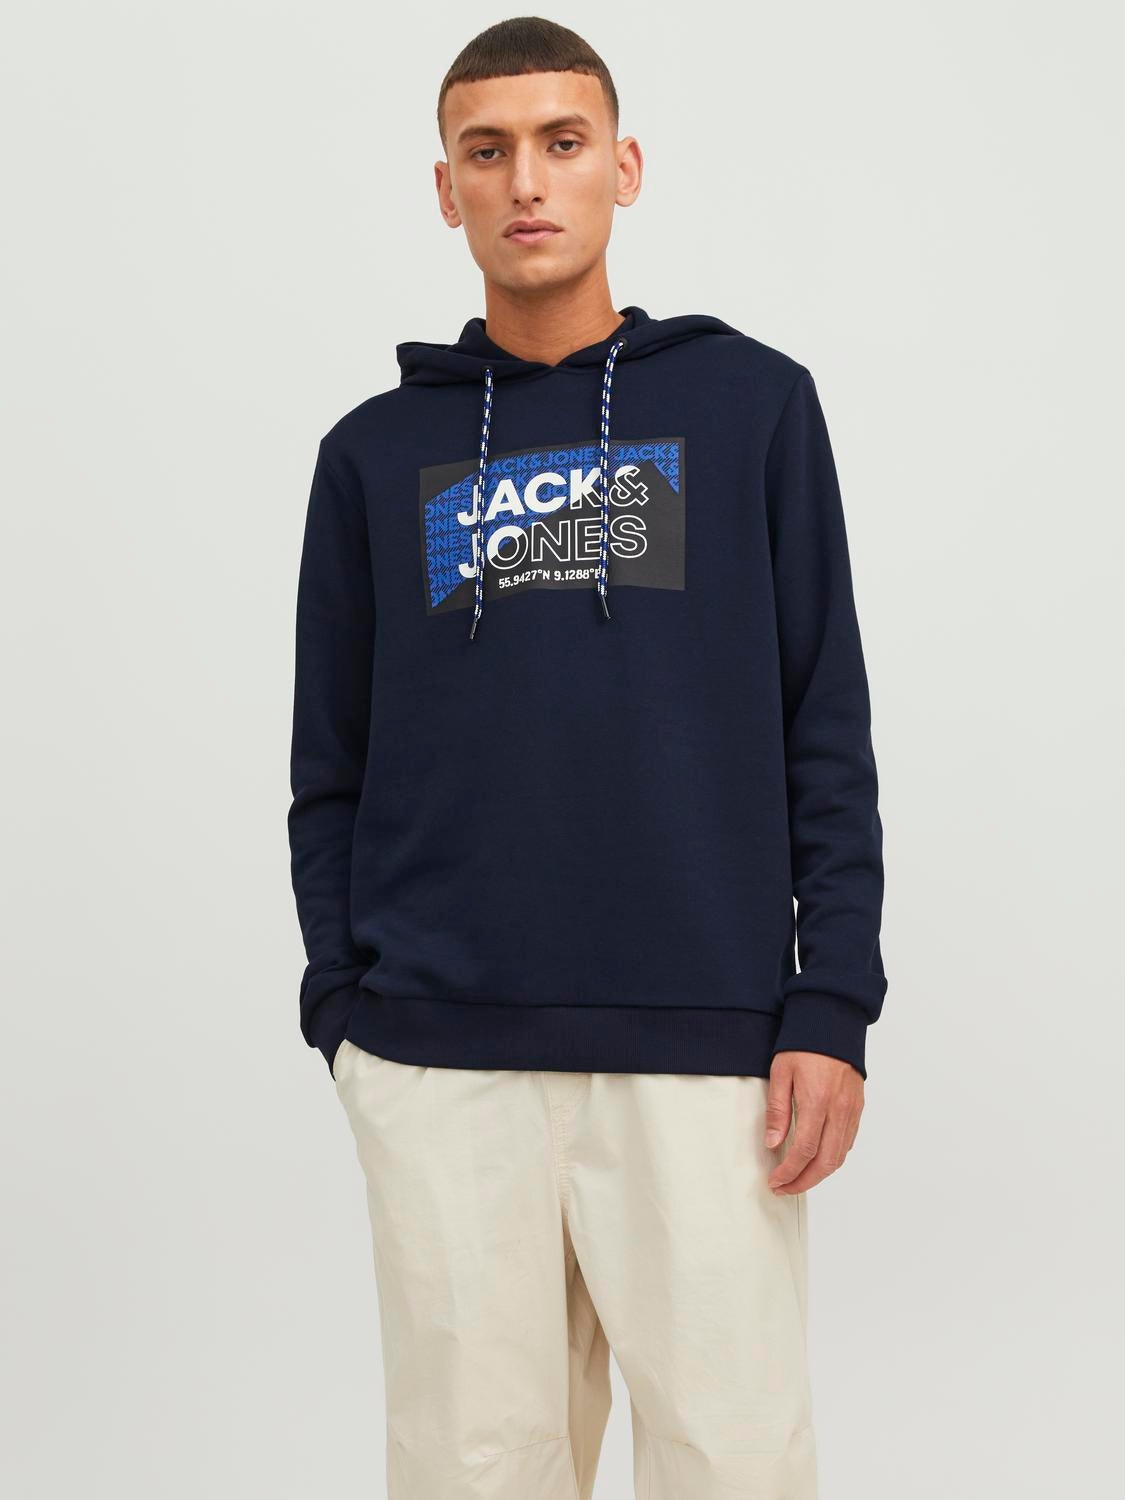 Jack & Jones Logo Hoodie -Navy Blazer - 12242480